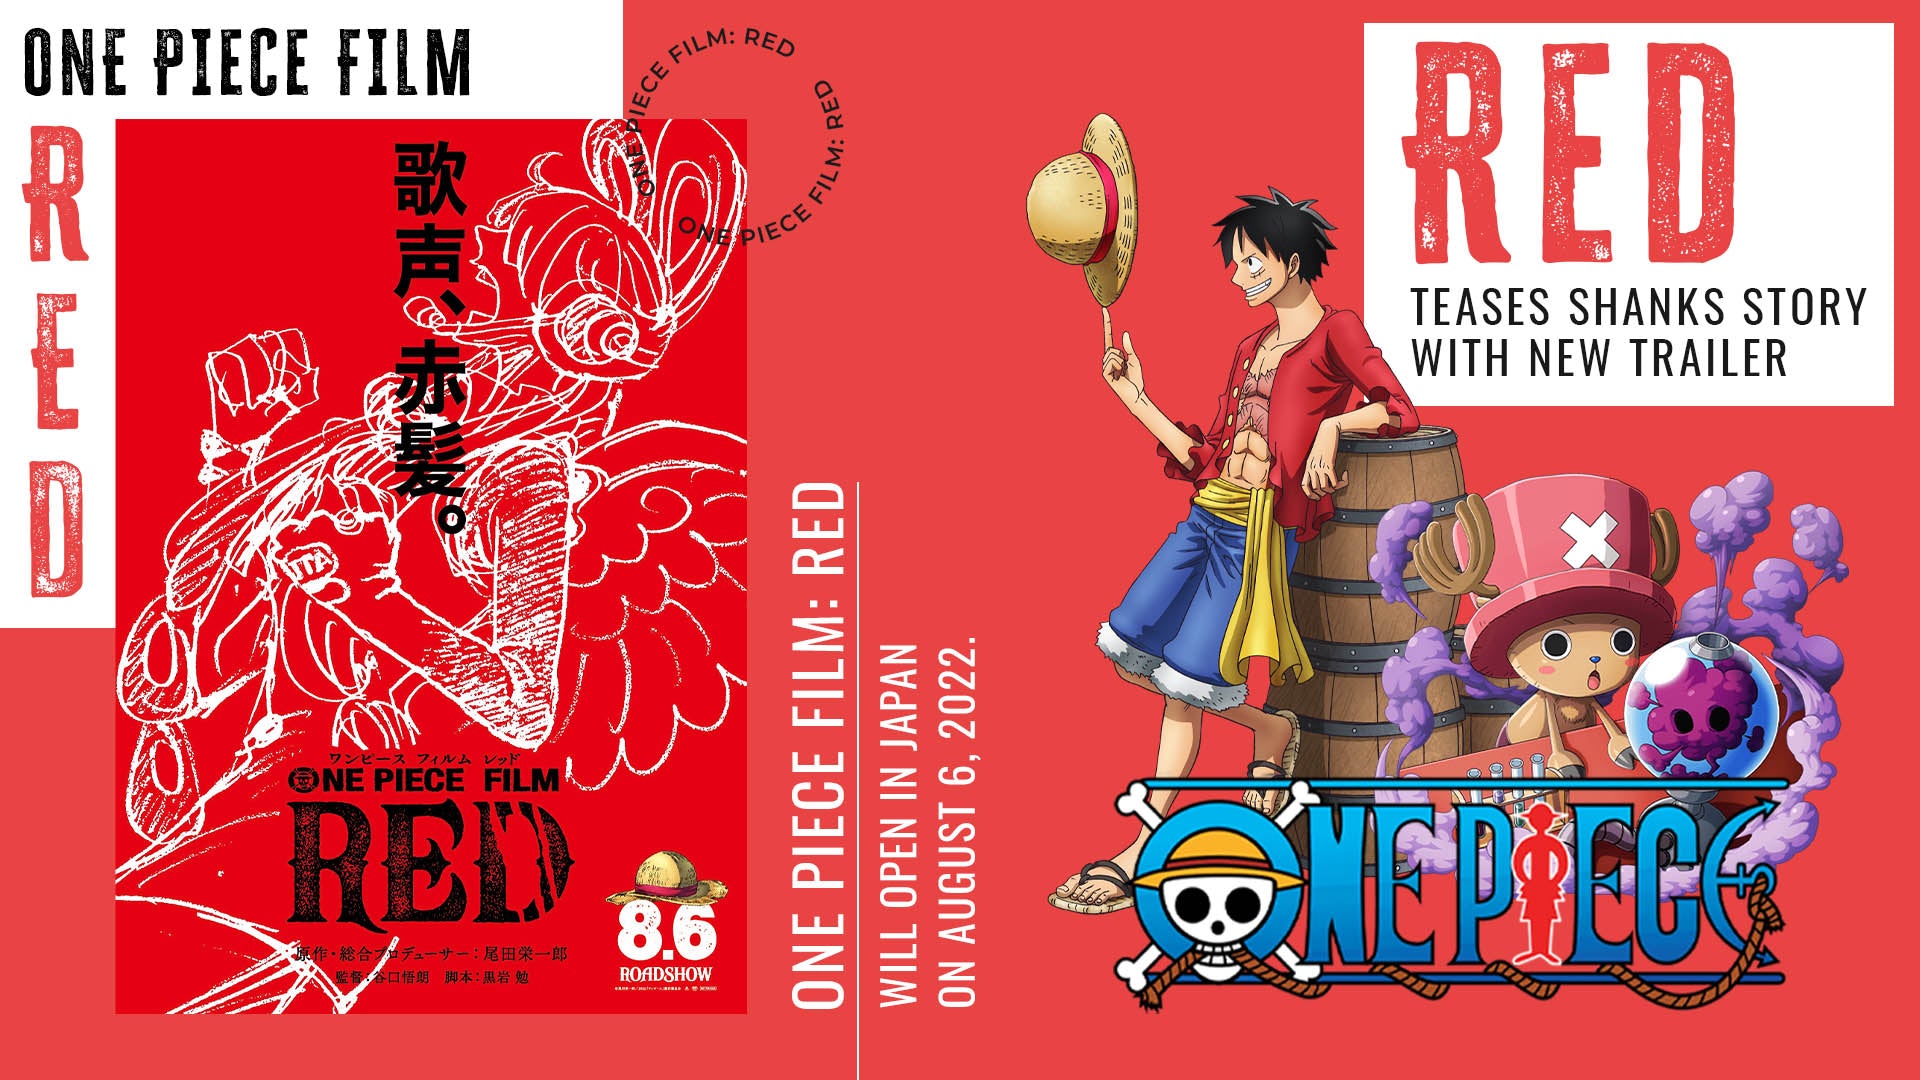 One Piece Film Red Header